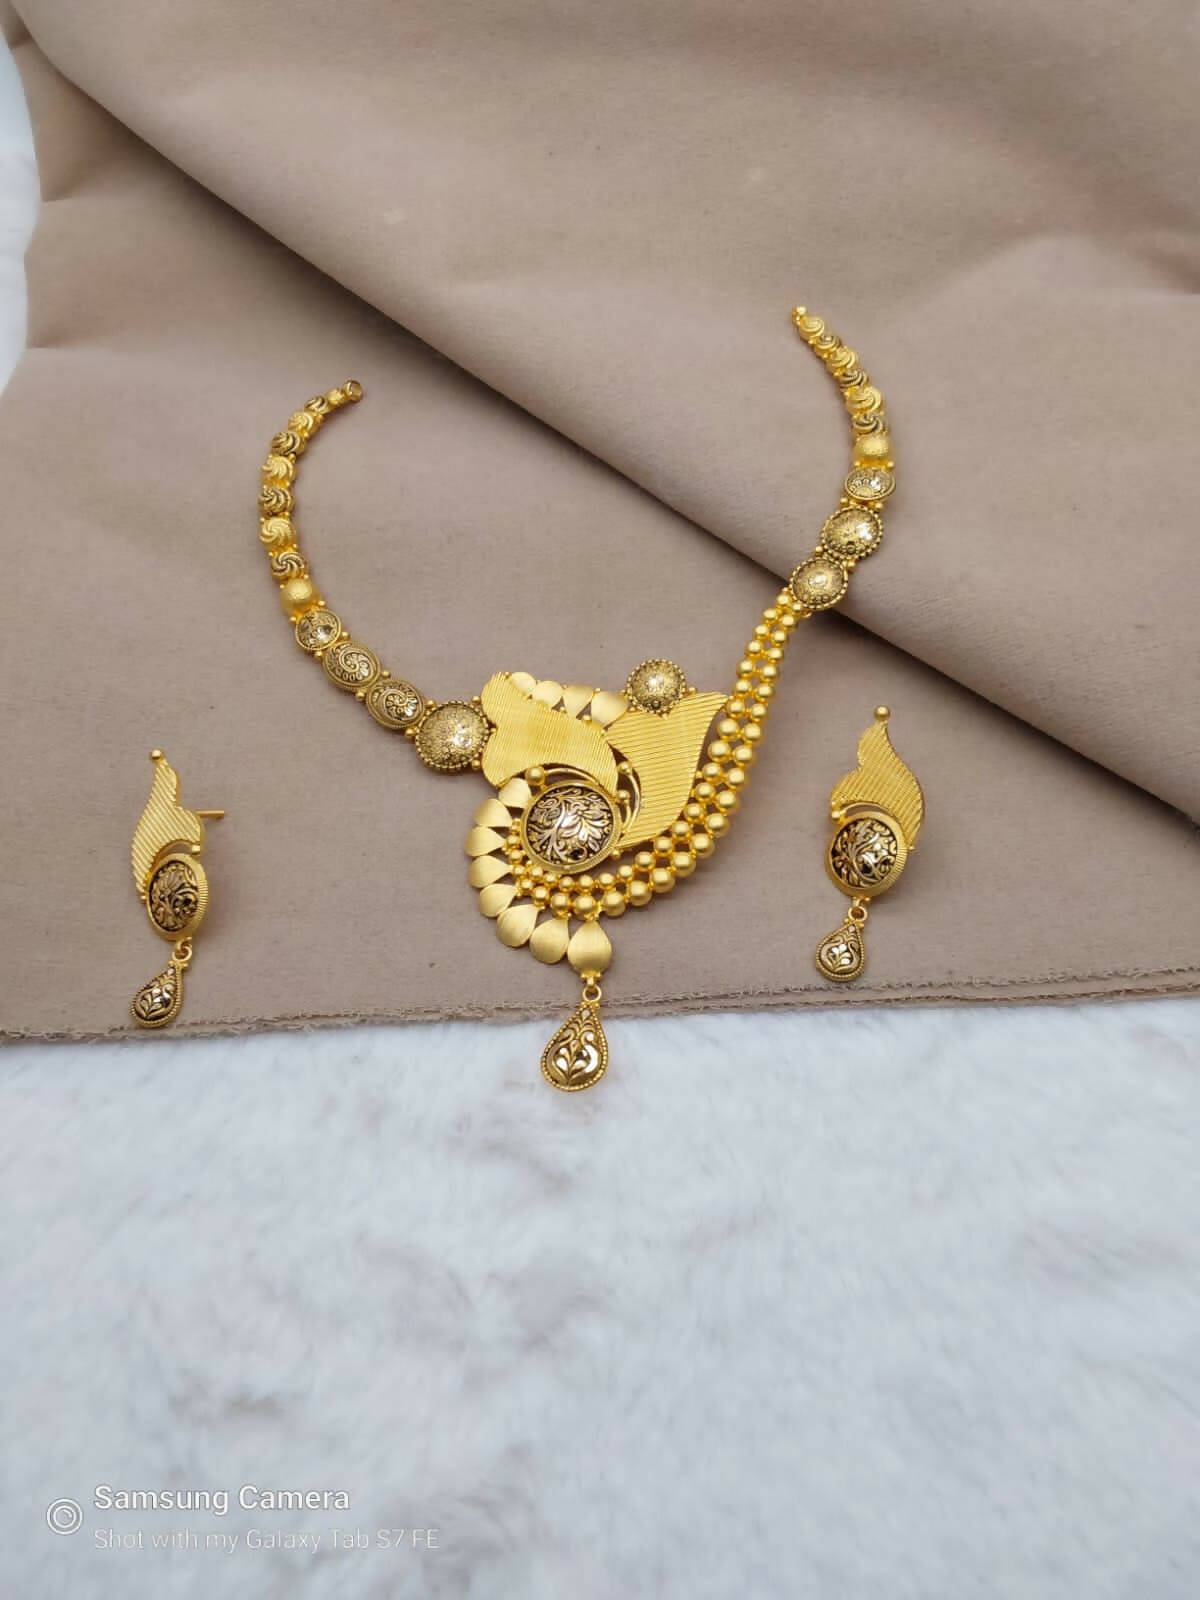 Antique Necklace Sarafa Bazar India